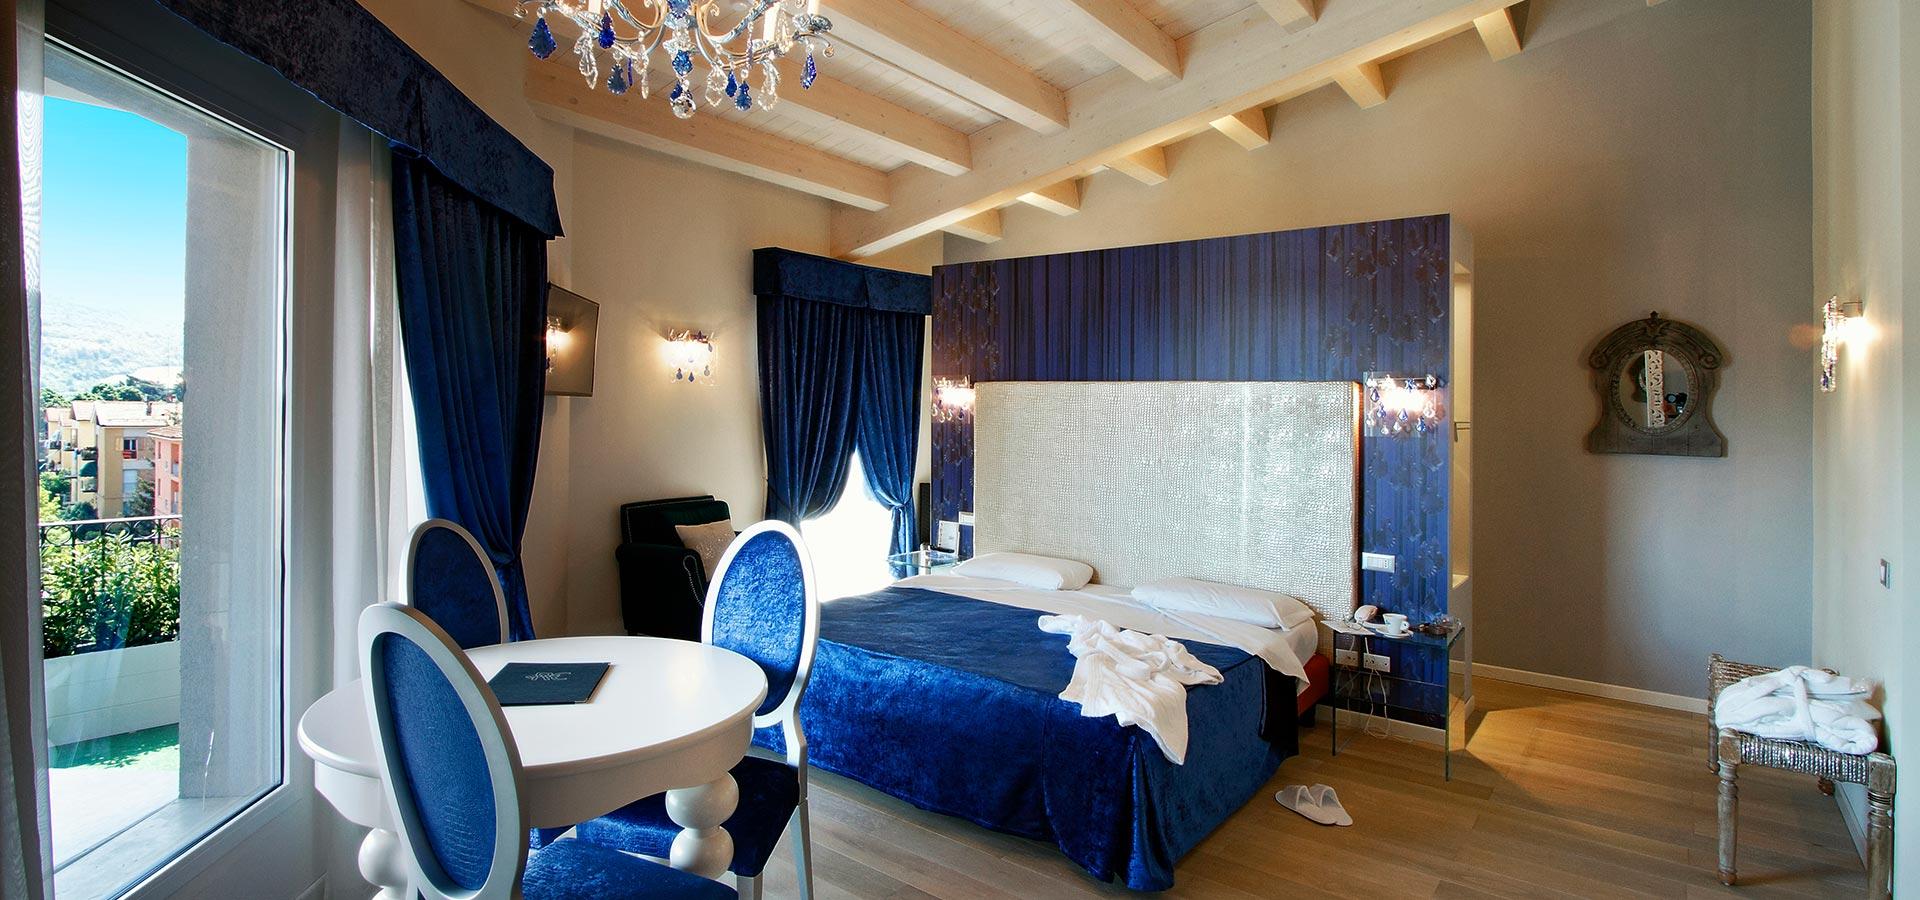 hotelcalzavecchio it santuario-della-beata-vergine-di-san-luca 015